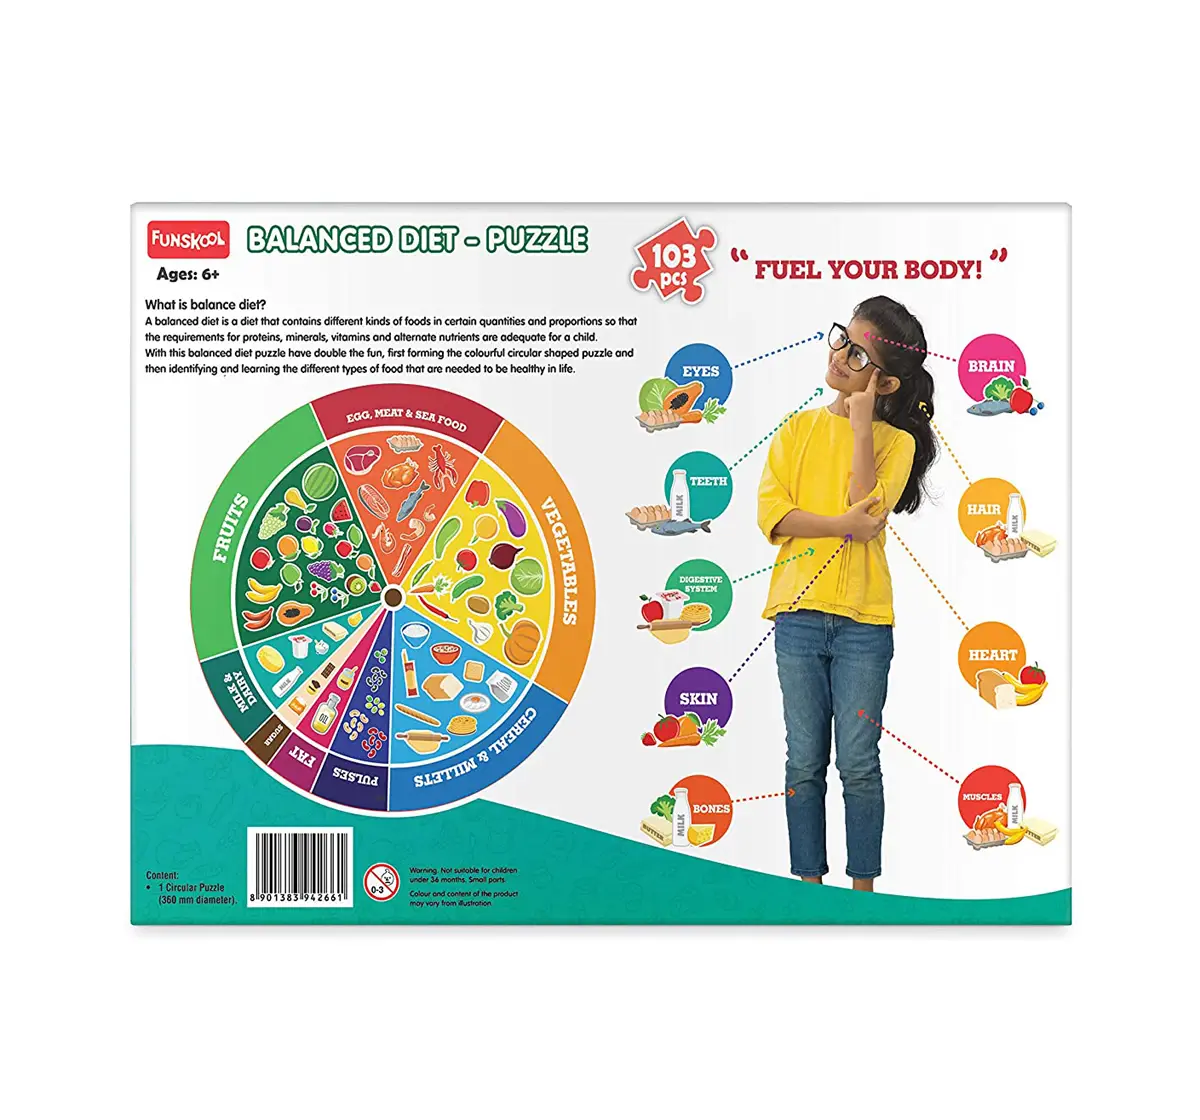 Play&Learn Balanced Diet Cardboard Multicolour 3Y+